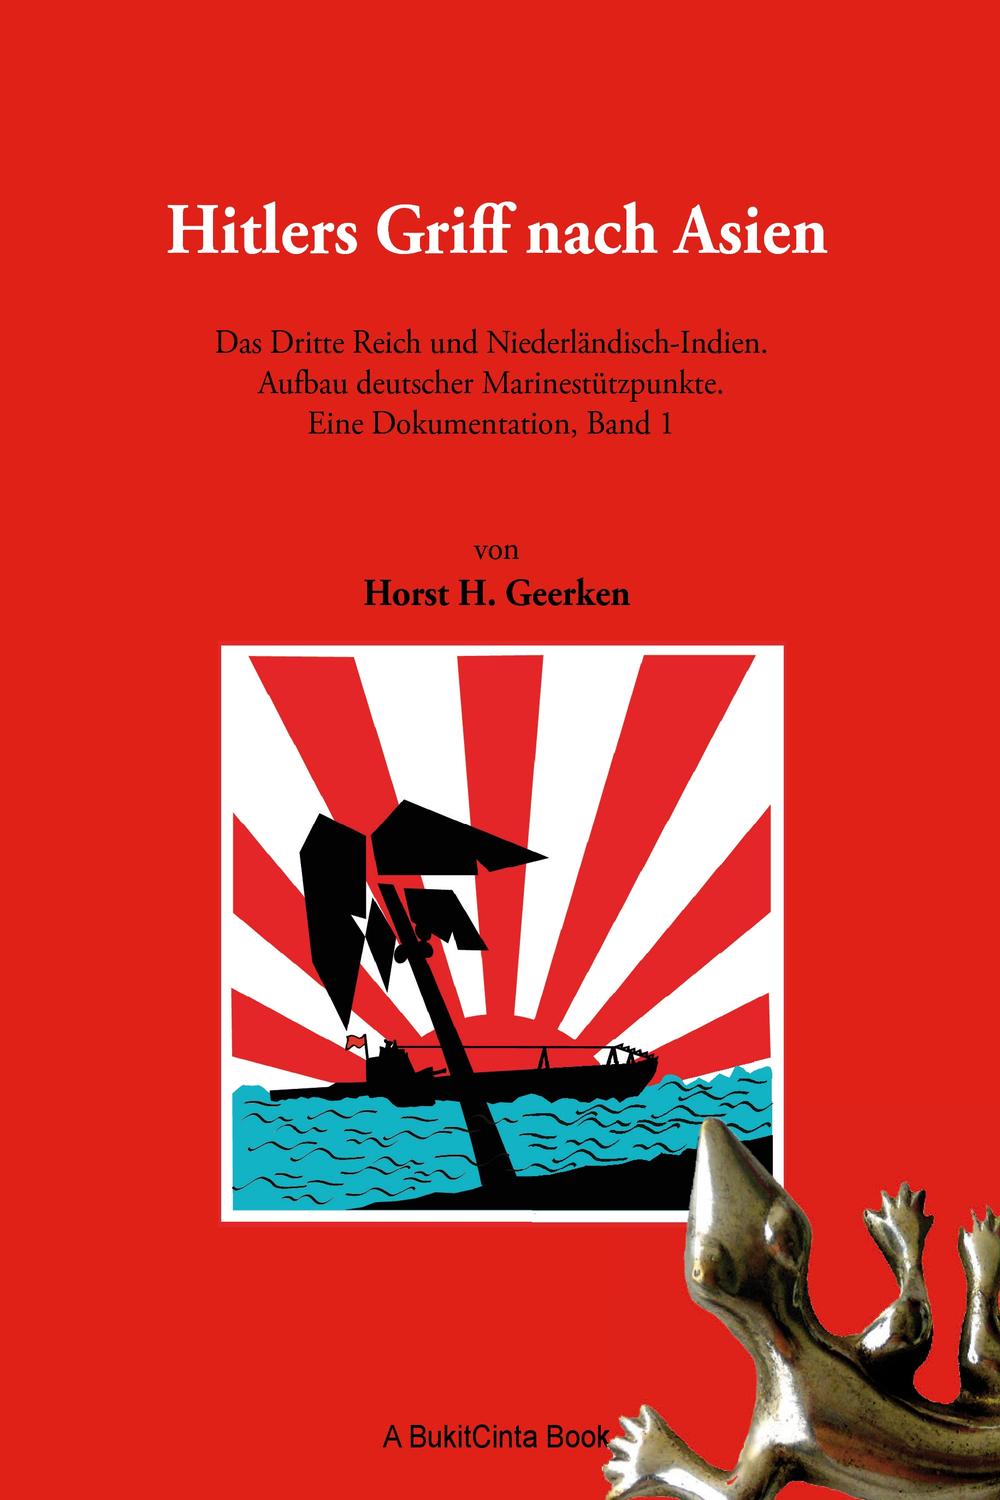 Hitlers Griff nach Asien 1 - Horst H. Geerken